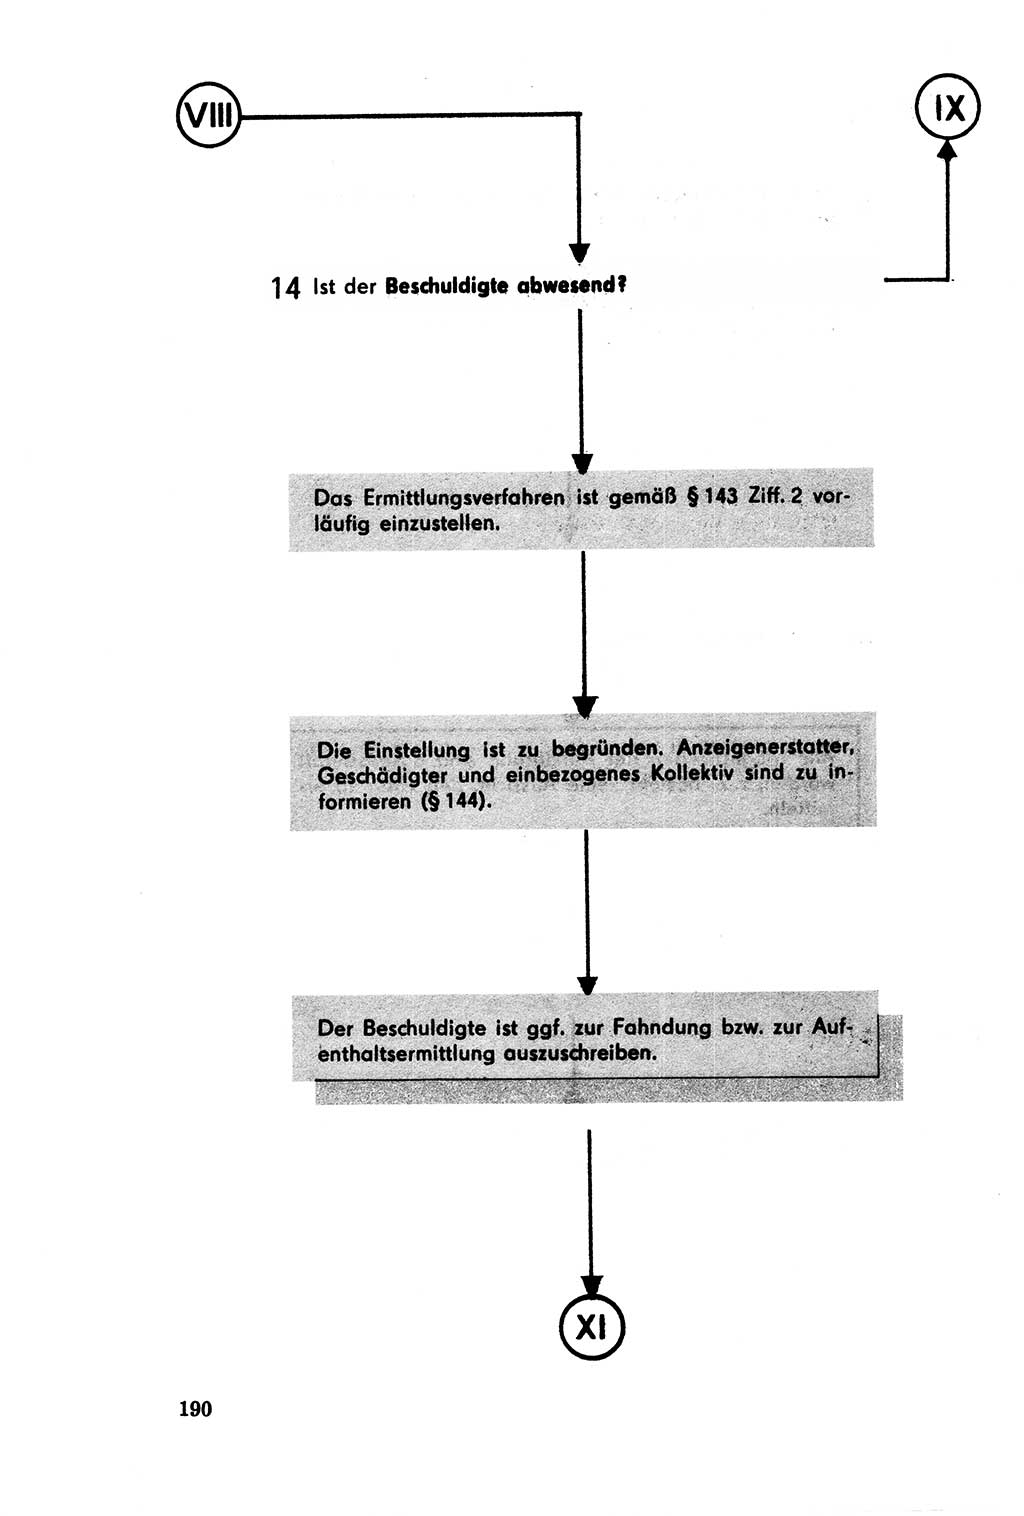 Der Abschluß des Ermittlungsverfahrens [Deutsche Demokratische Republik (DDR)] 1978, Seite 190 (Abschl. EV DDR 1978, S. 190)